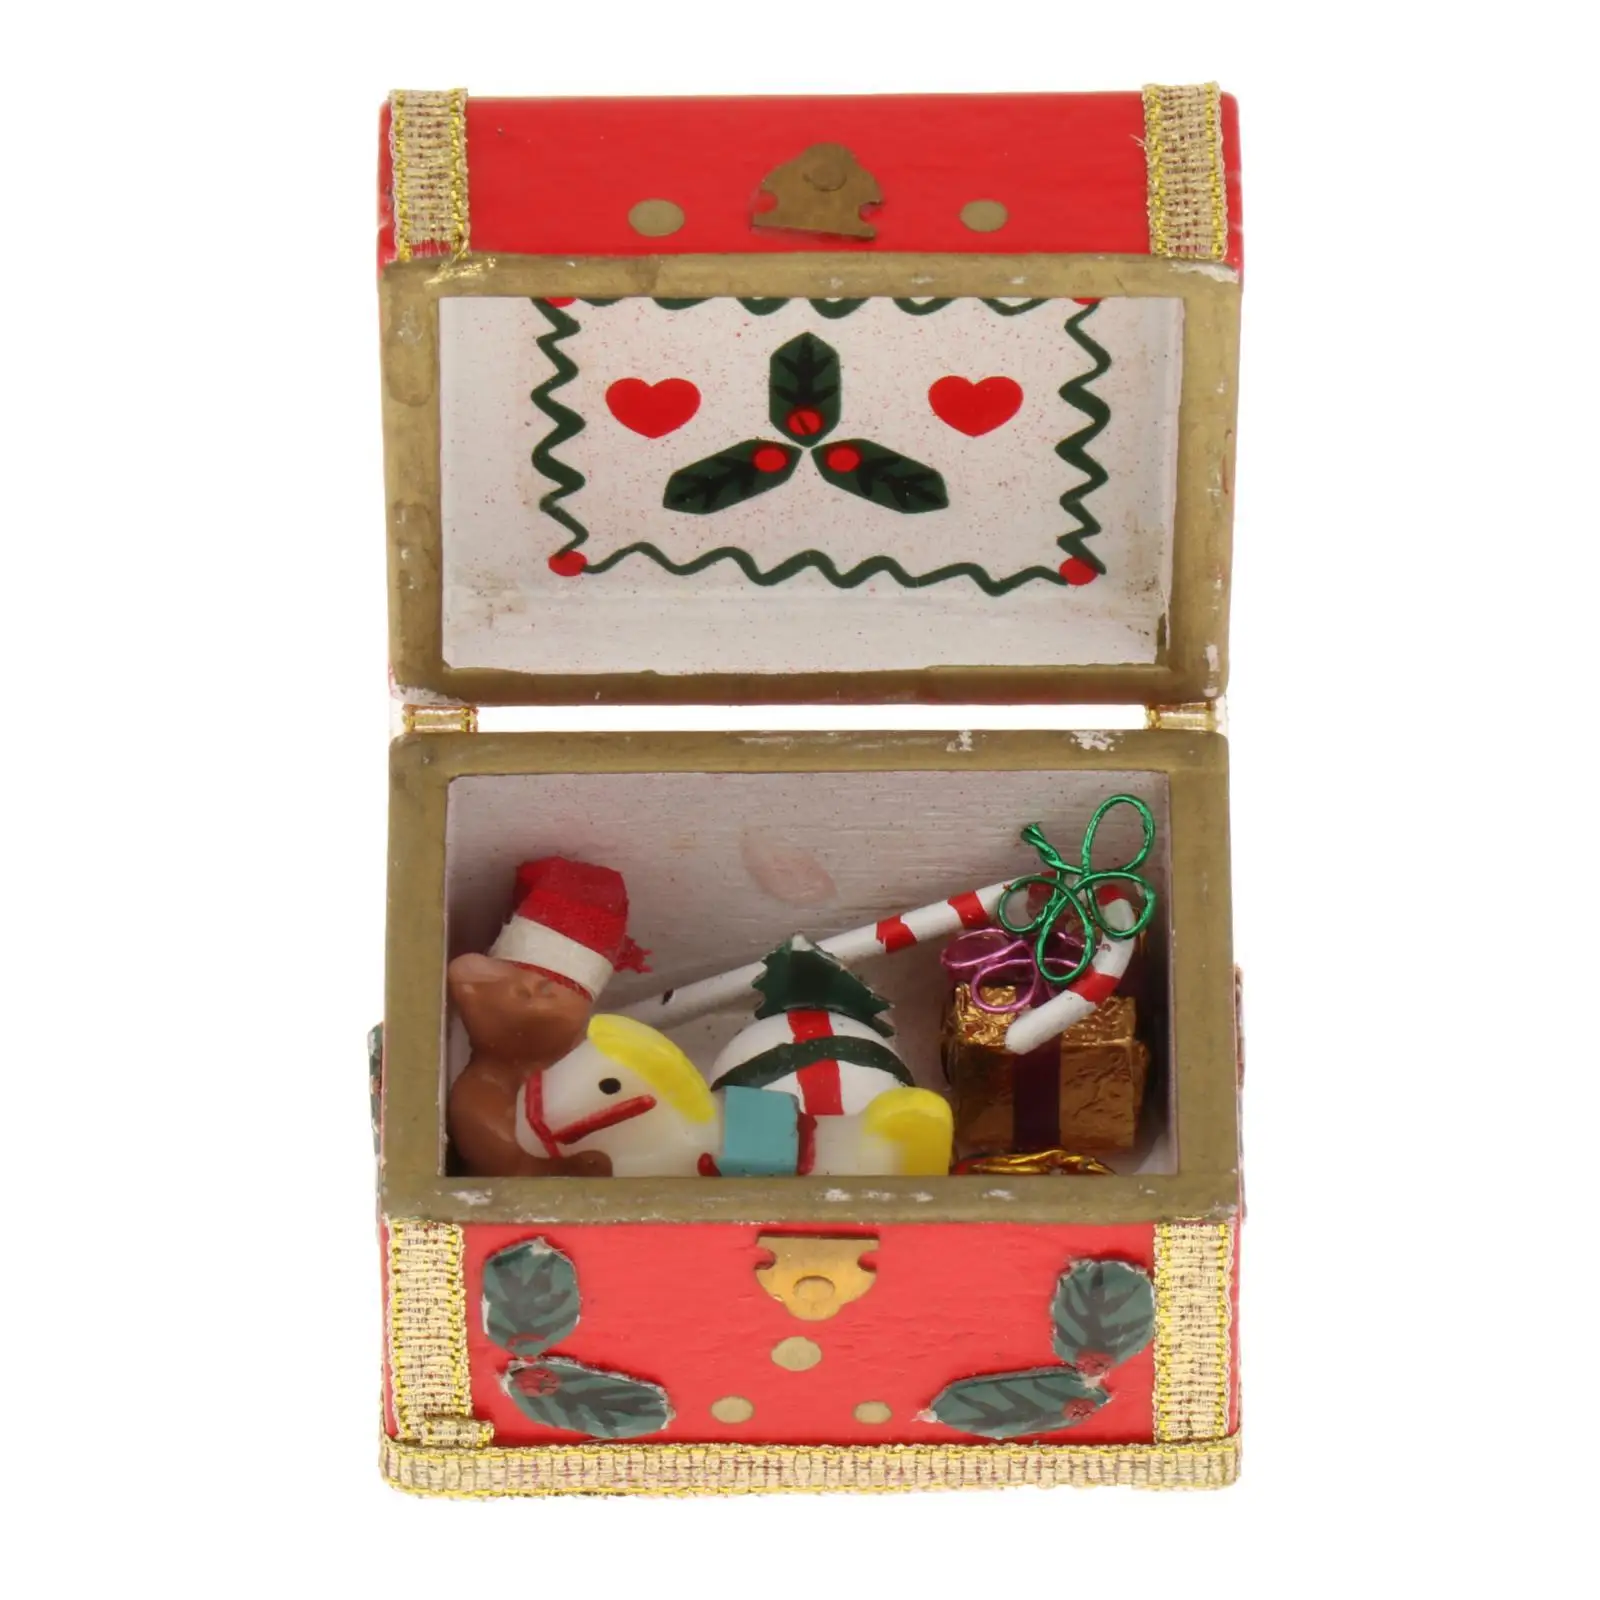 1/12 Scale Miniature Christmas Chest Handmade Mini Treasure Box for Miniature Scene Diorama Photo Props Accessories Decoration